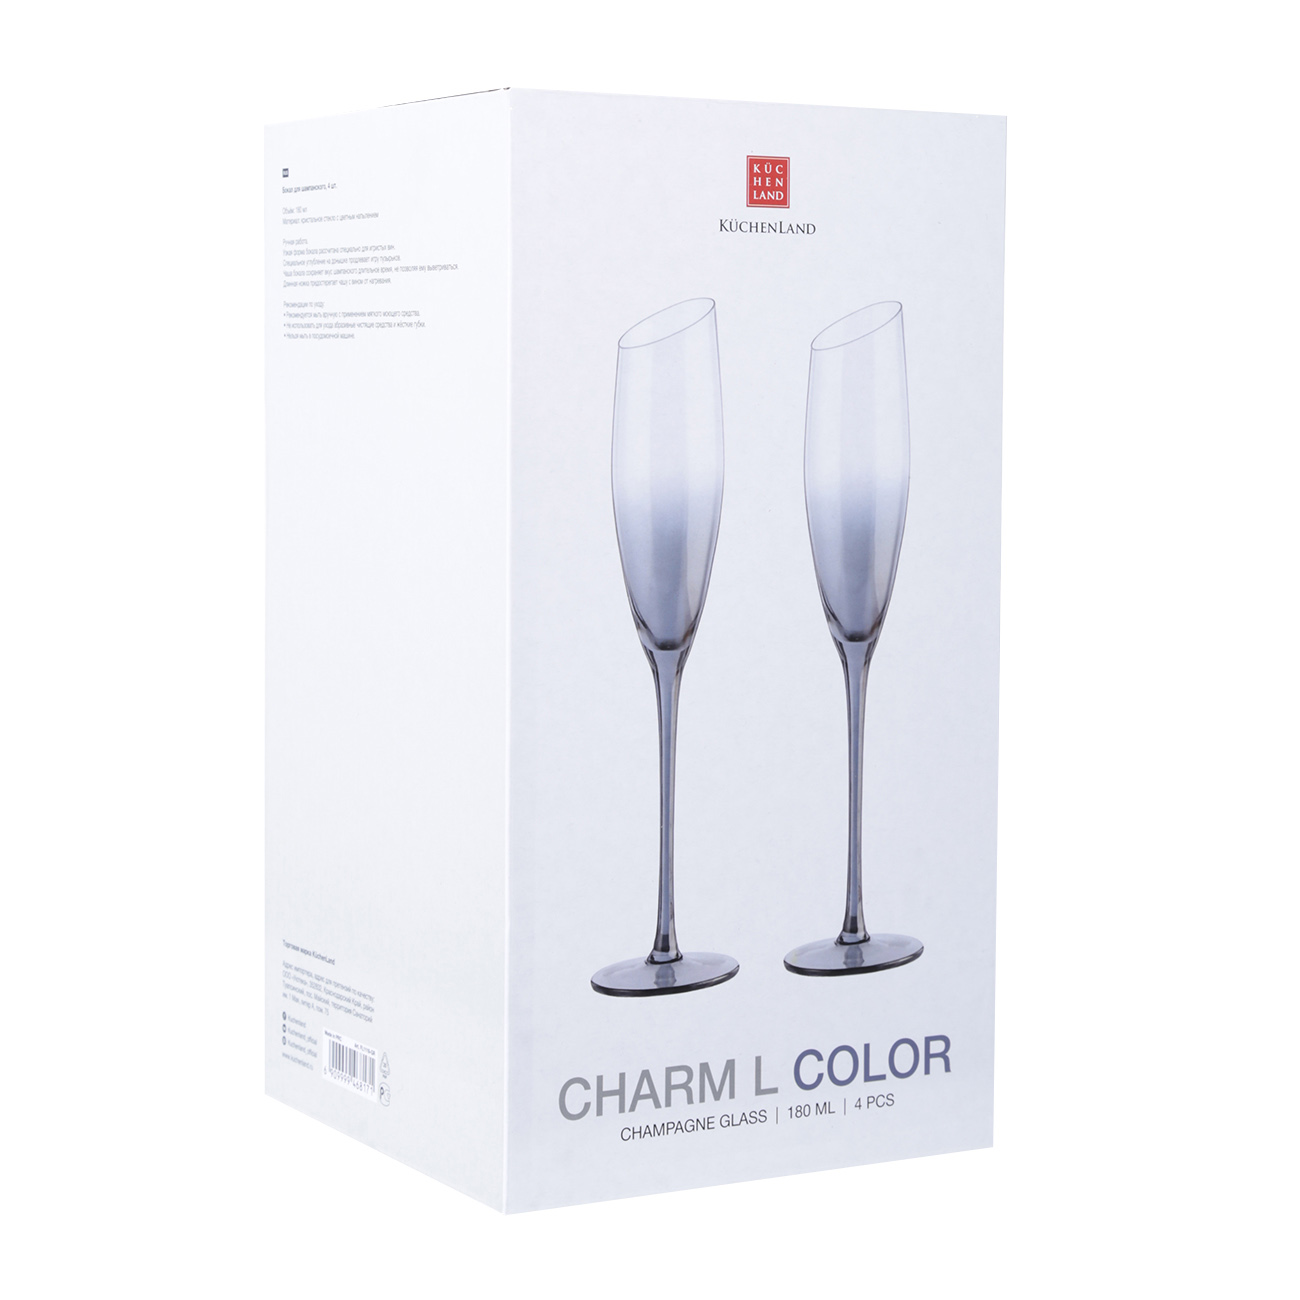 Бокал для шампанского, 180 мл, 4 шт, стекло, серый, Charm L Color изображение № 4